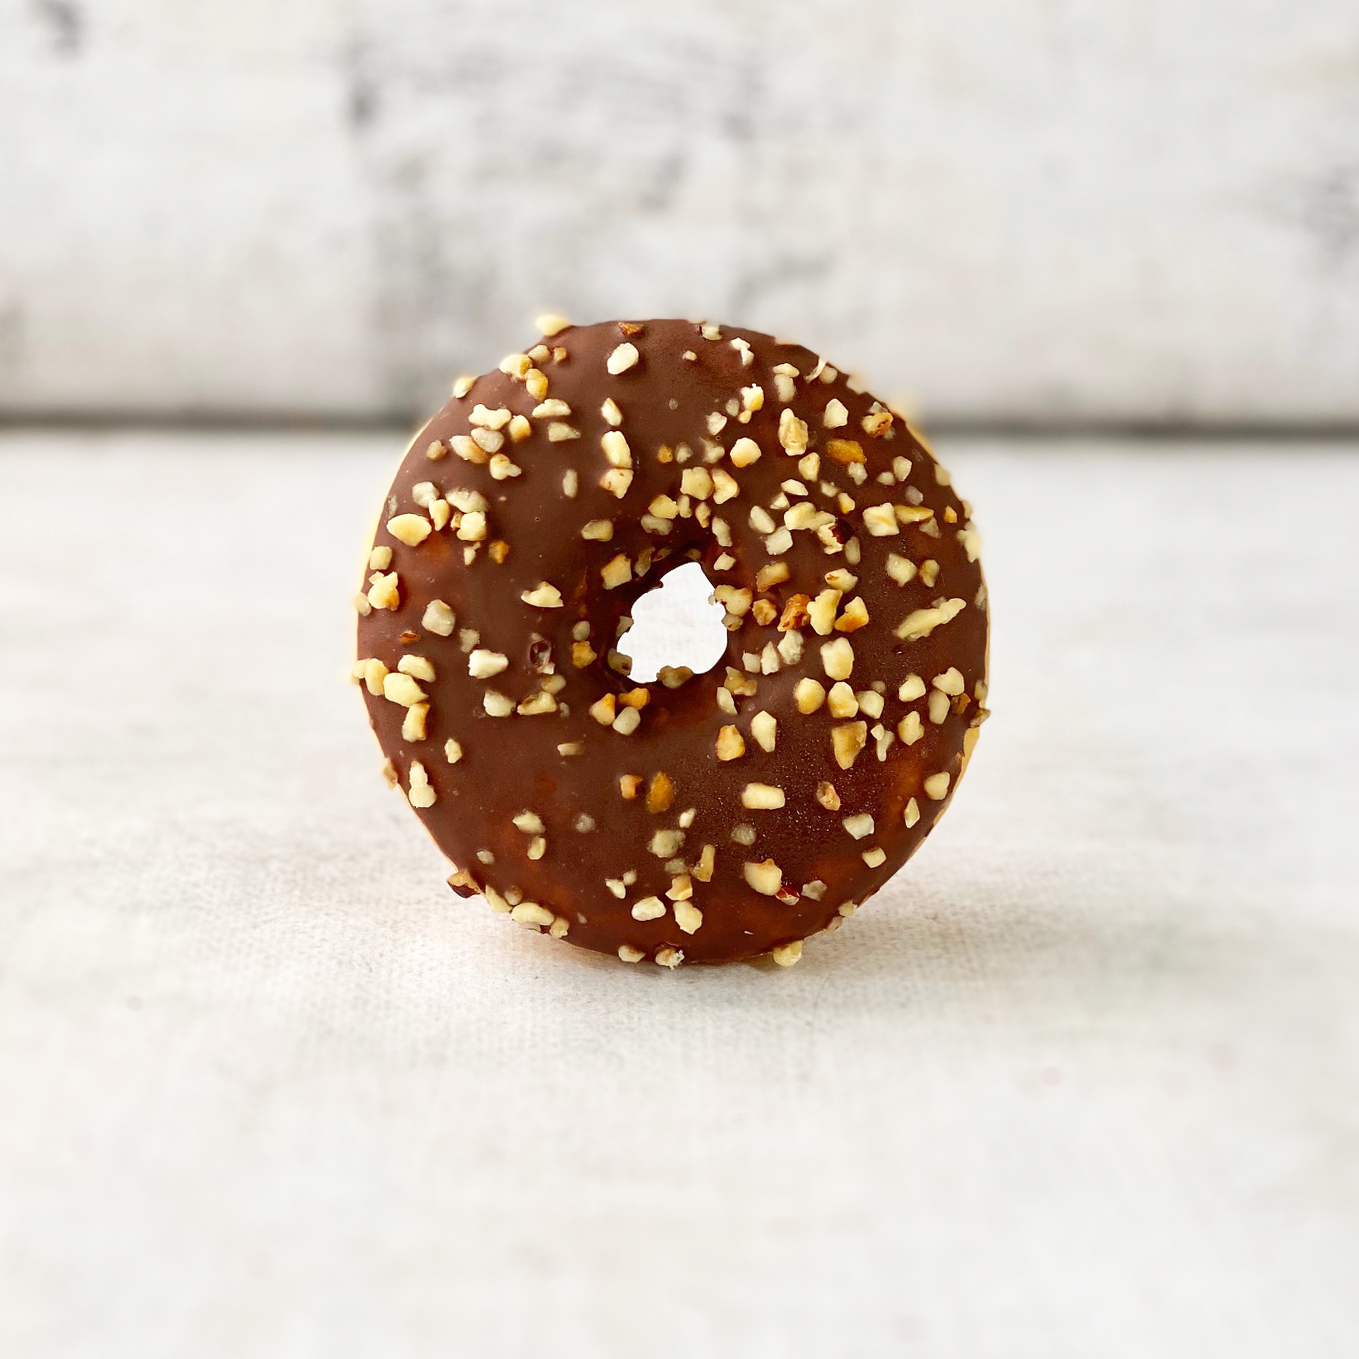 Пончик-донатс с шоколадно-ореховой начинкой, шоколадной кондитерской глазурью с дробленым фундуком изображение 5